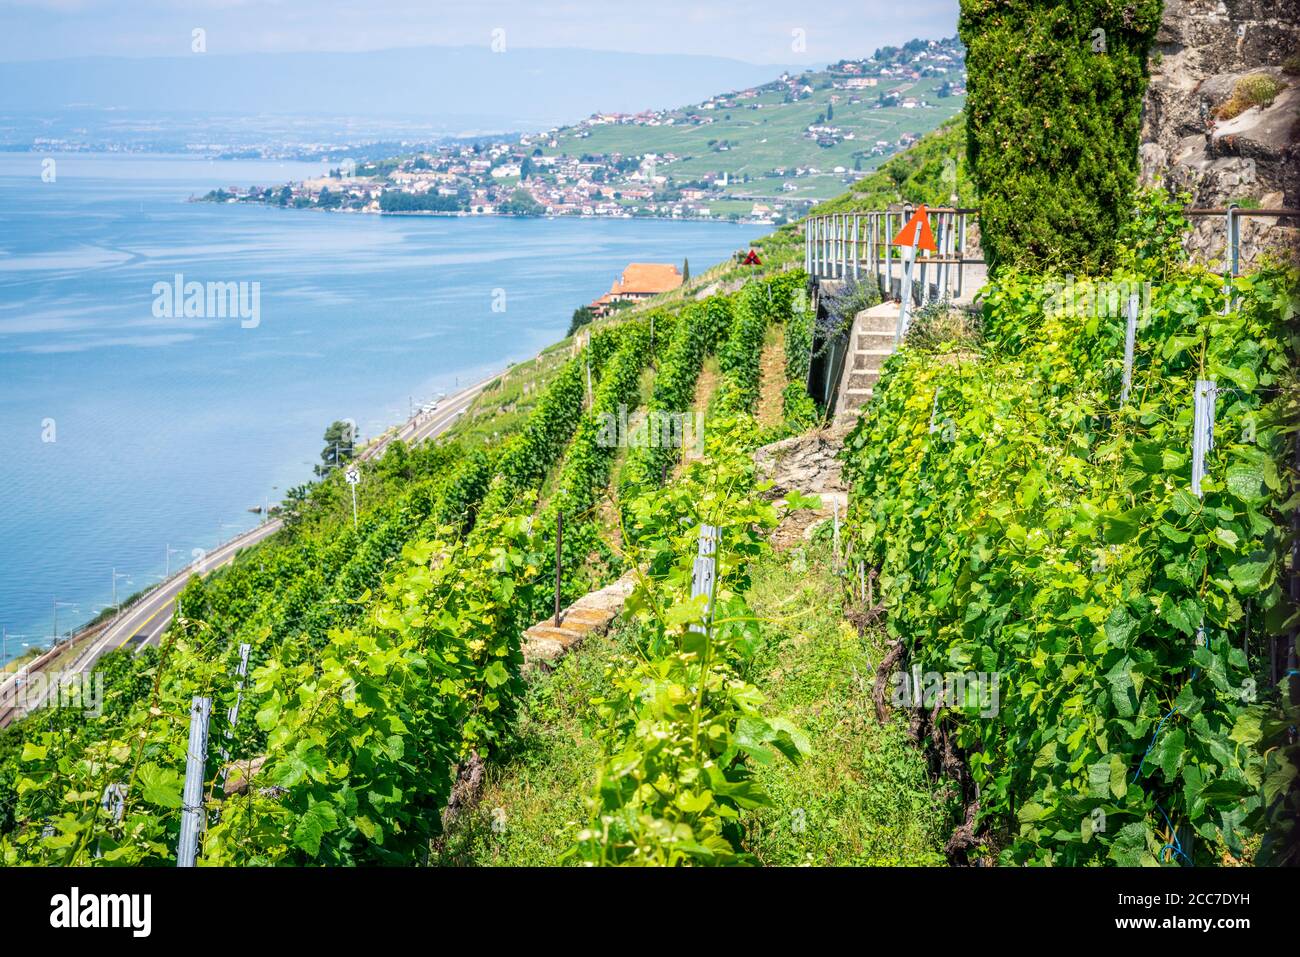 Vignobles en terrasse et vue sur le lac de Genève à Dezaley Lavaux Vaud Suisse Banque D'Images